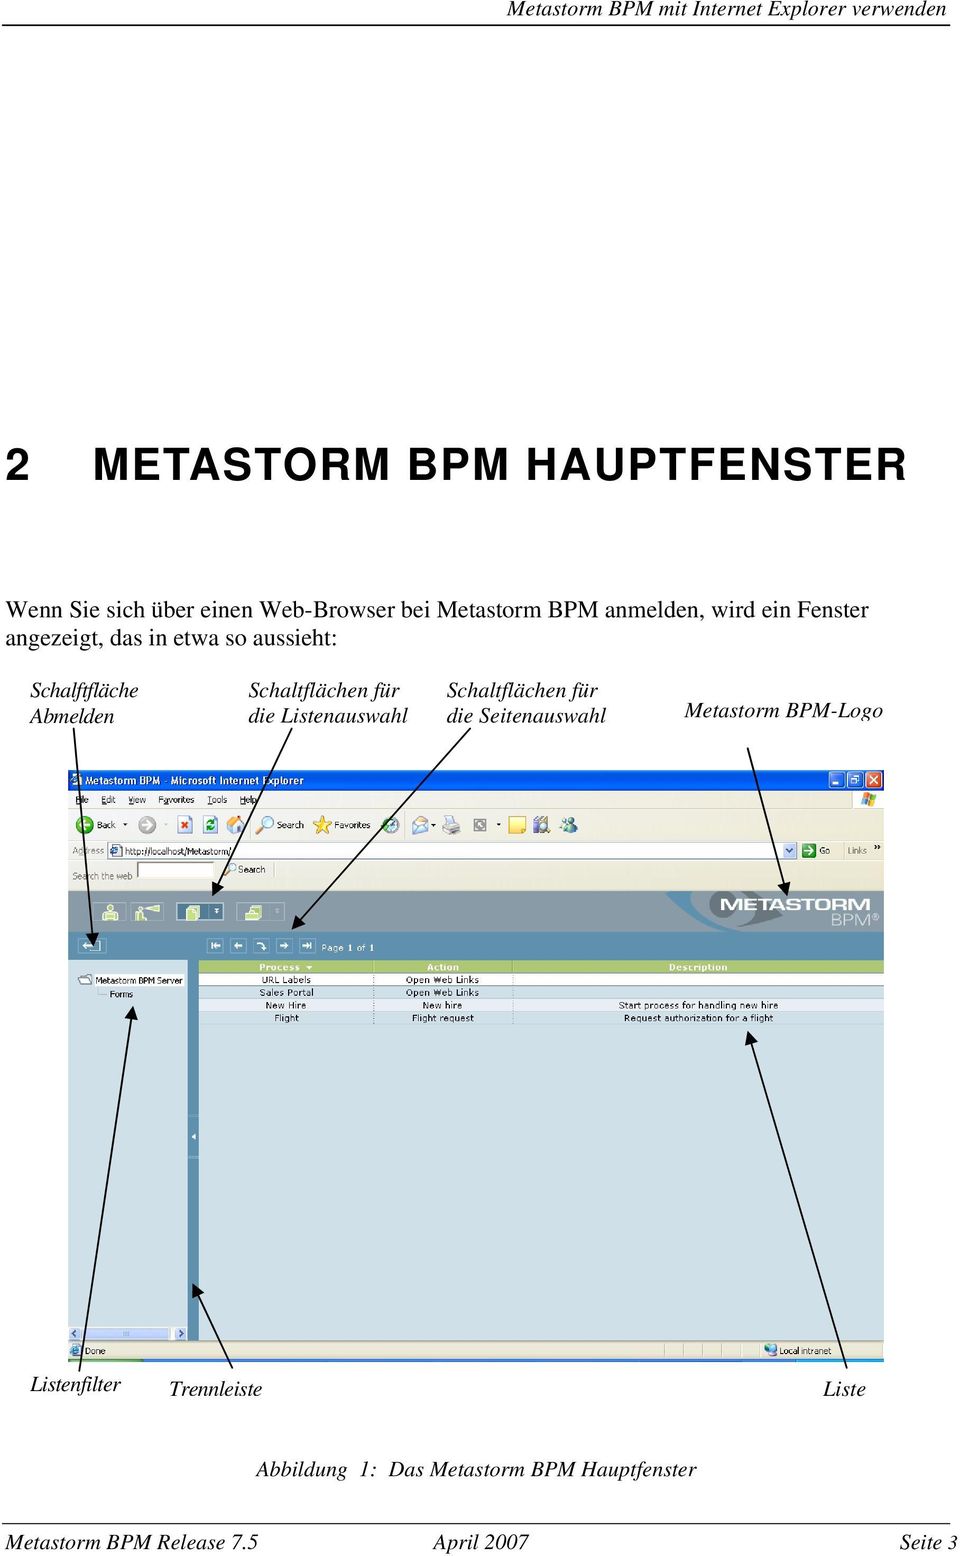 Abmelden Schaltflächen für die Listenauswahl Schaltflächen für die Seitenauswahl Metastorm BPM-Logo